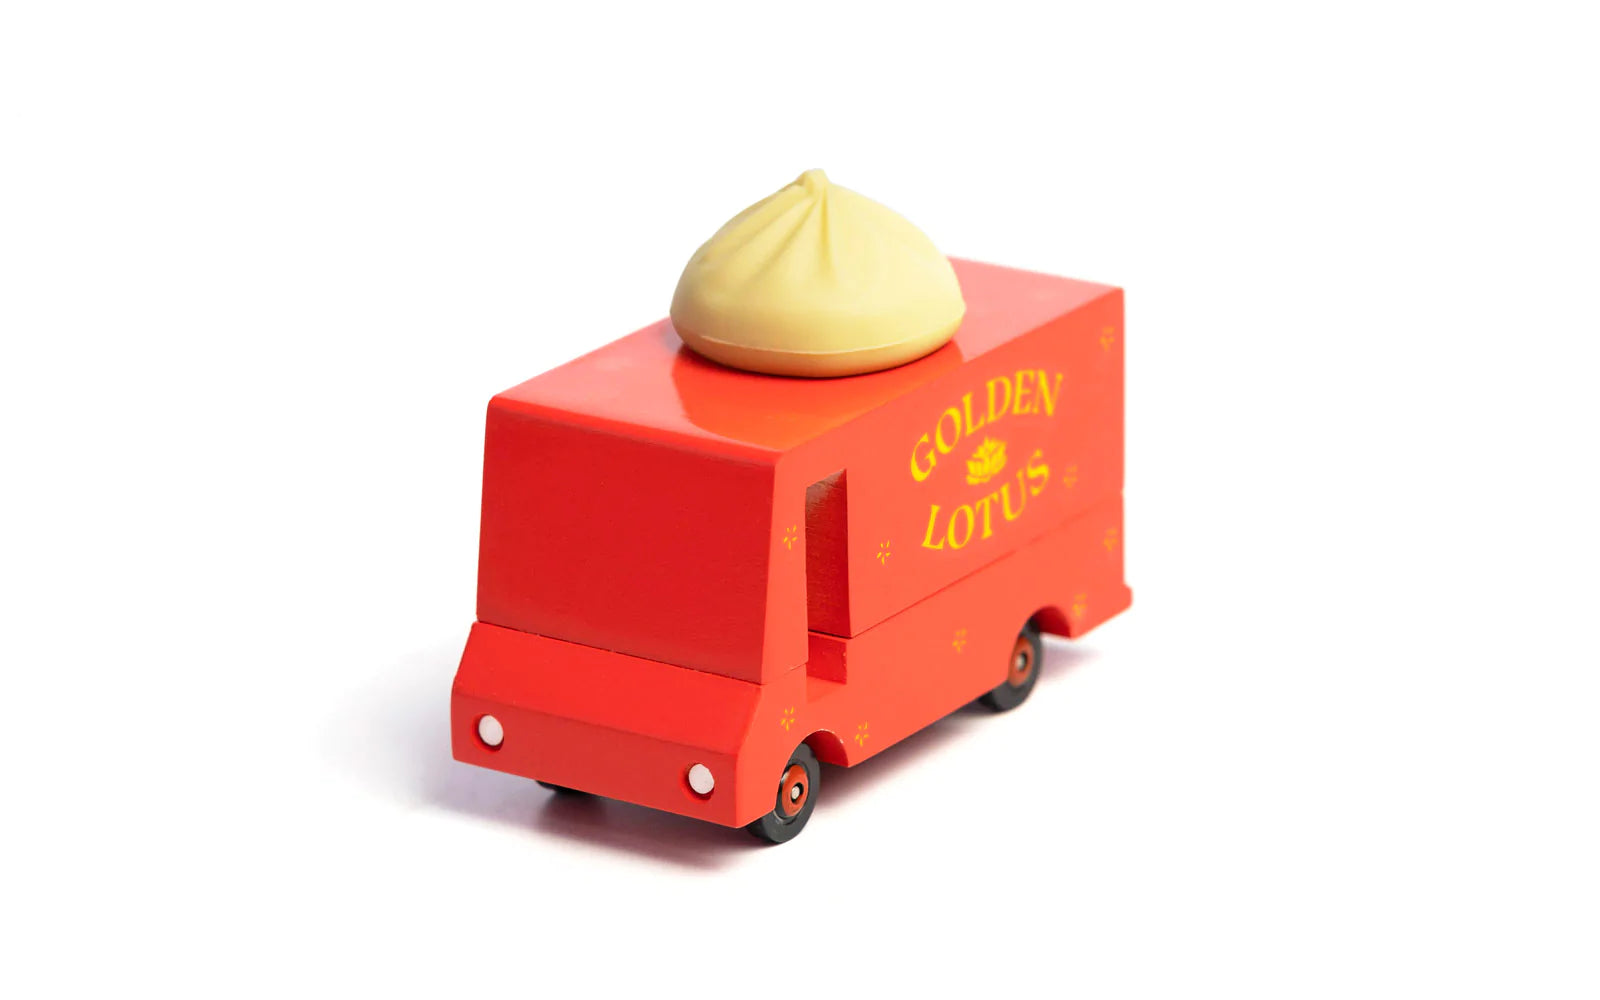 Candyvans Dumpling Van